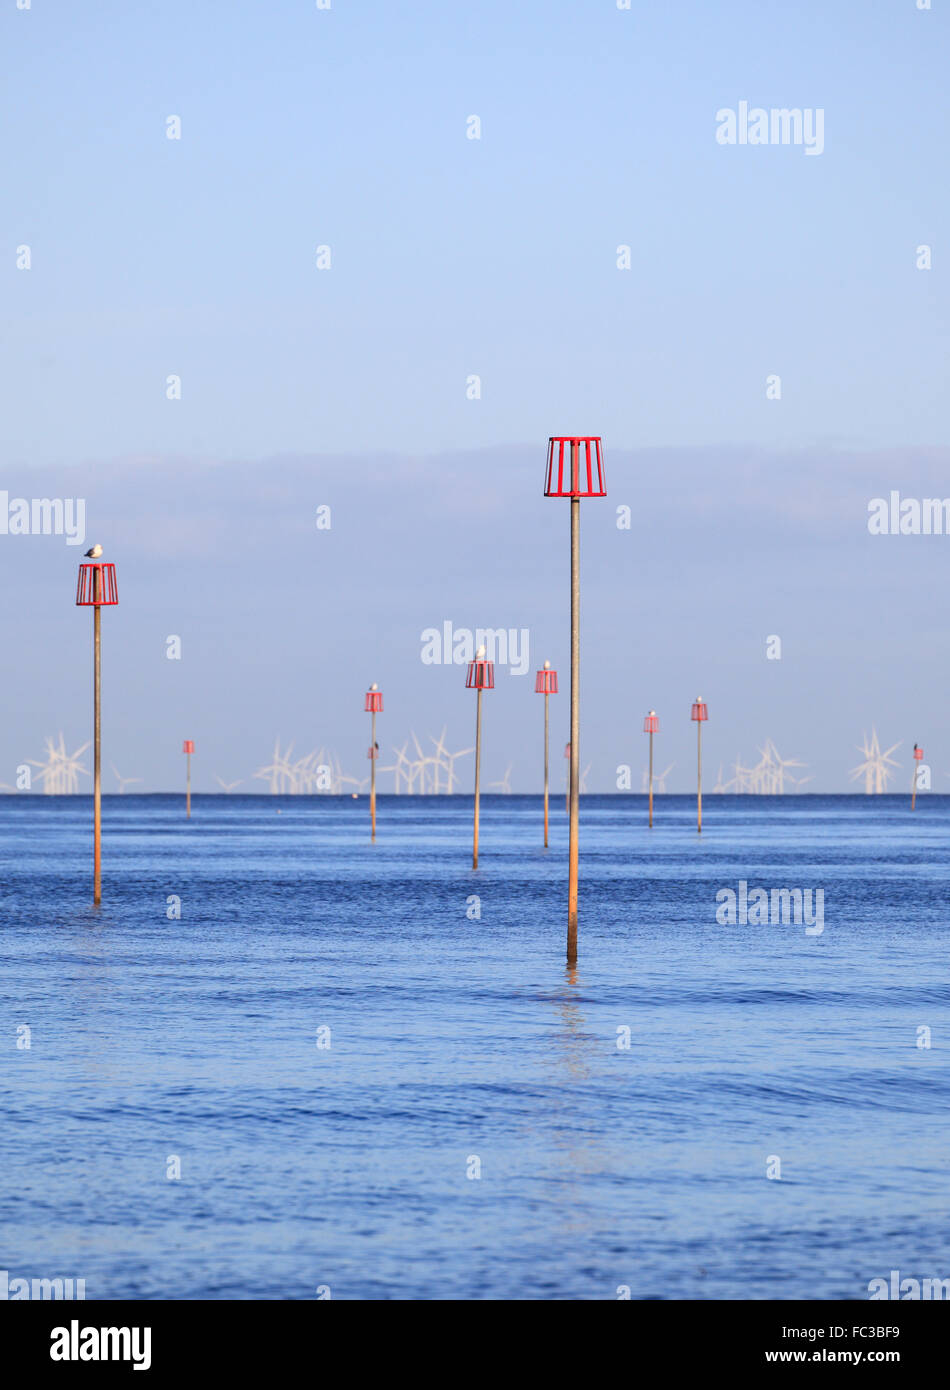 Marcatori per pennelli sommersi e delle turbine a vento in una calma il mare blu. Foto Stock